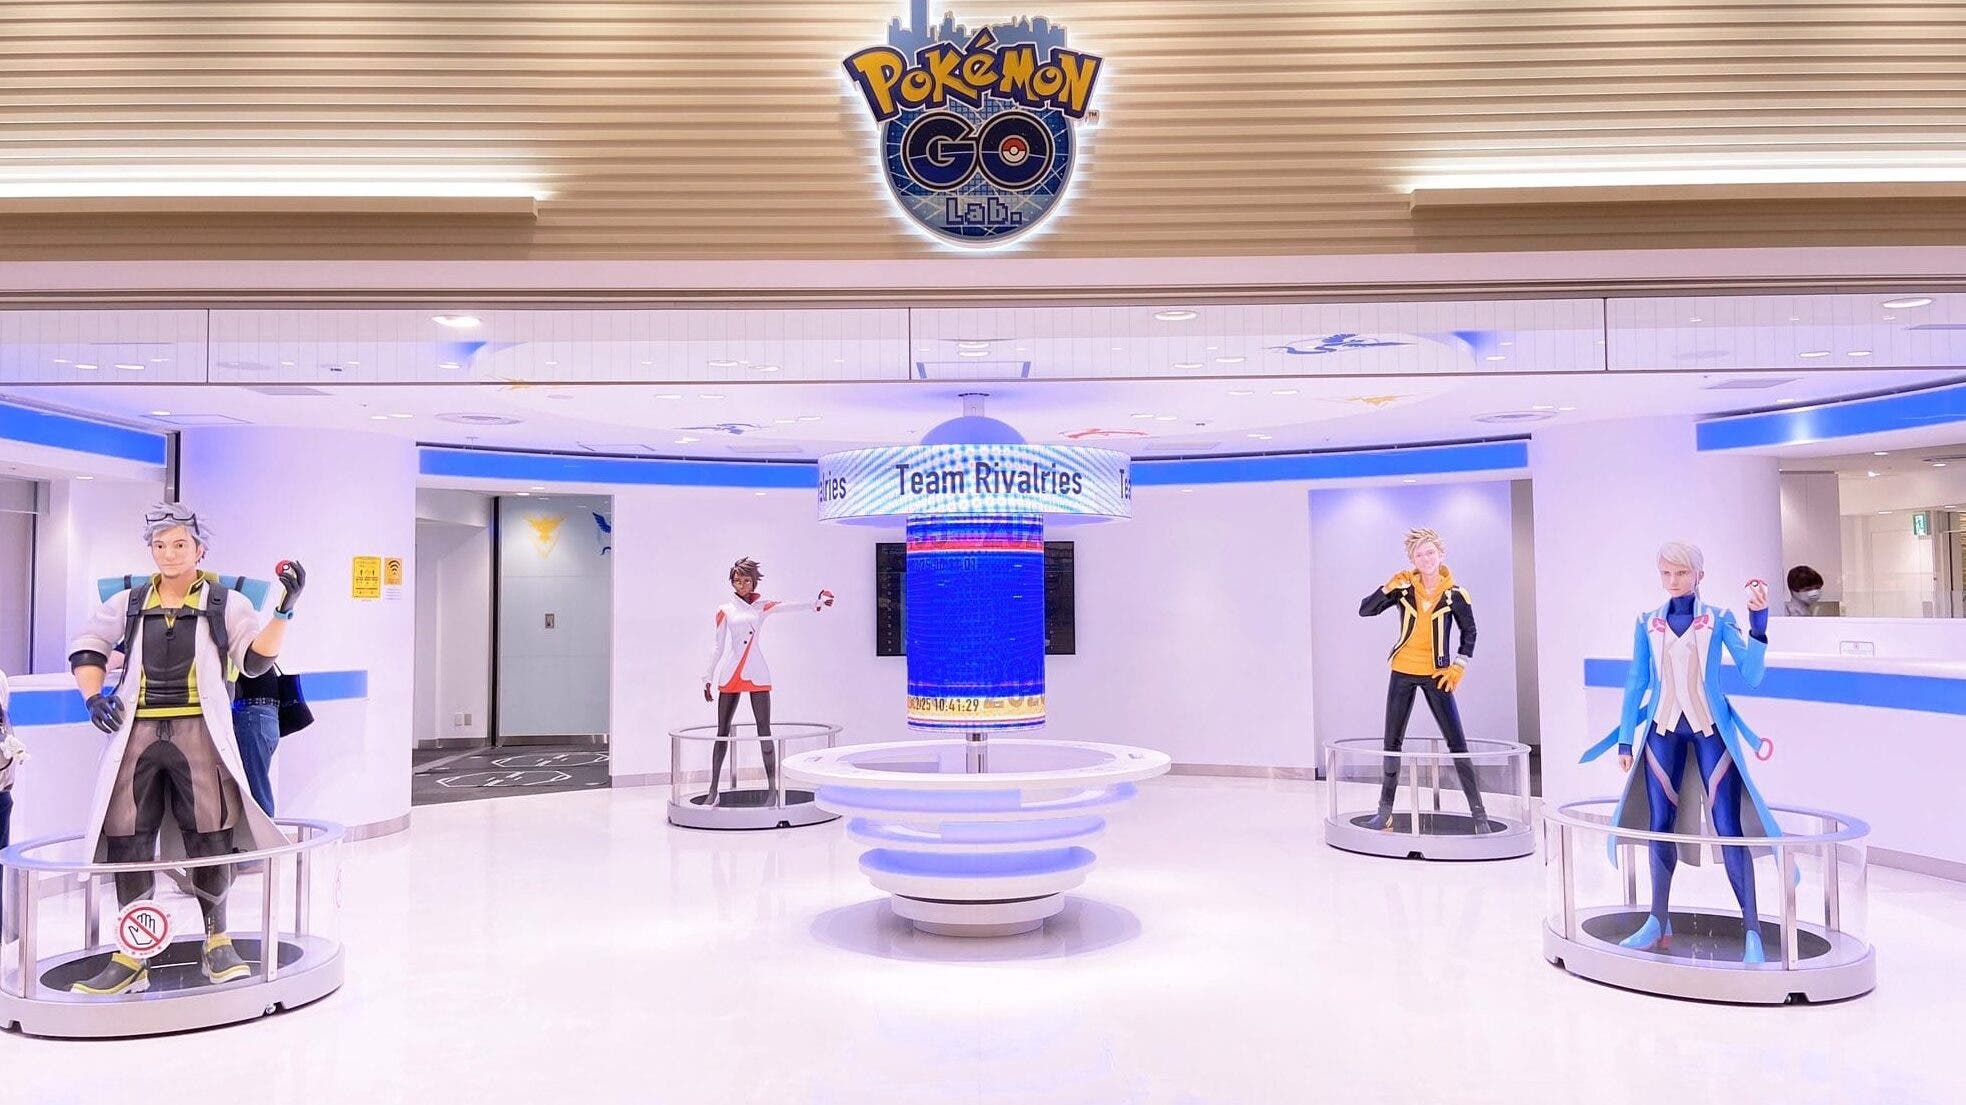 Se comparten más imágenes del Pokémon GO Lab situado en el Pokémon Center Mega Tokyo